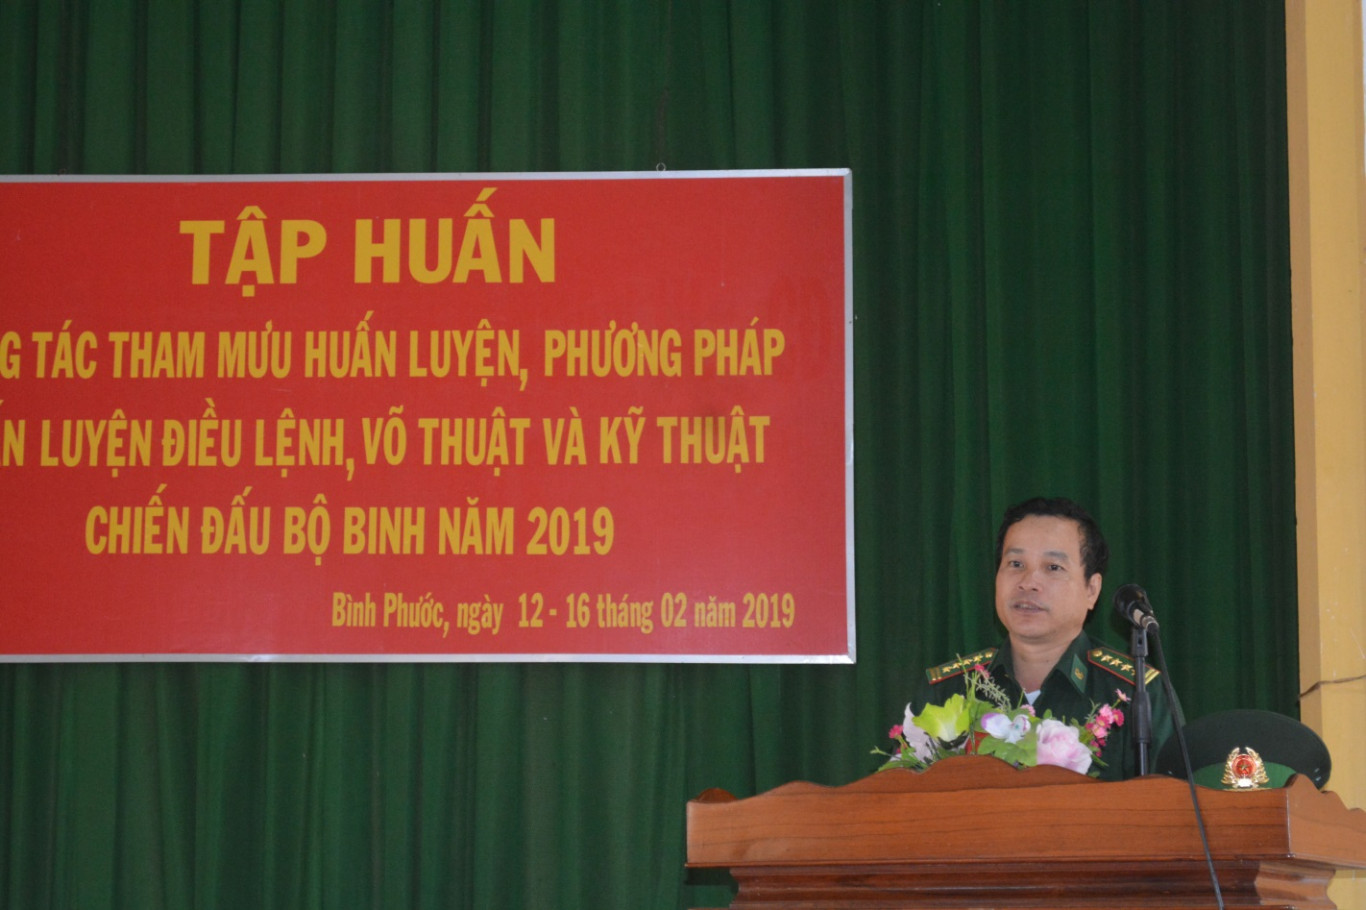 Đại tá Lê Đa Tịnh, Phó Chỉ huy trưởng – Tham mưu Tác chiến phát biểu khai mạc lớp tập huấn